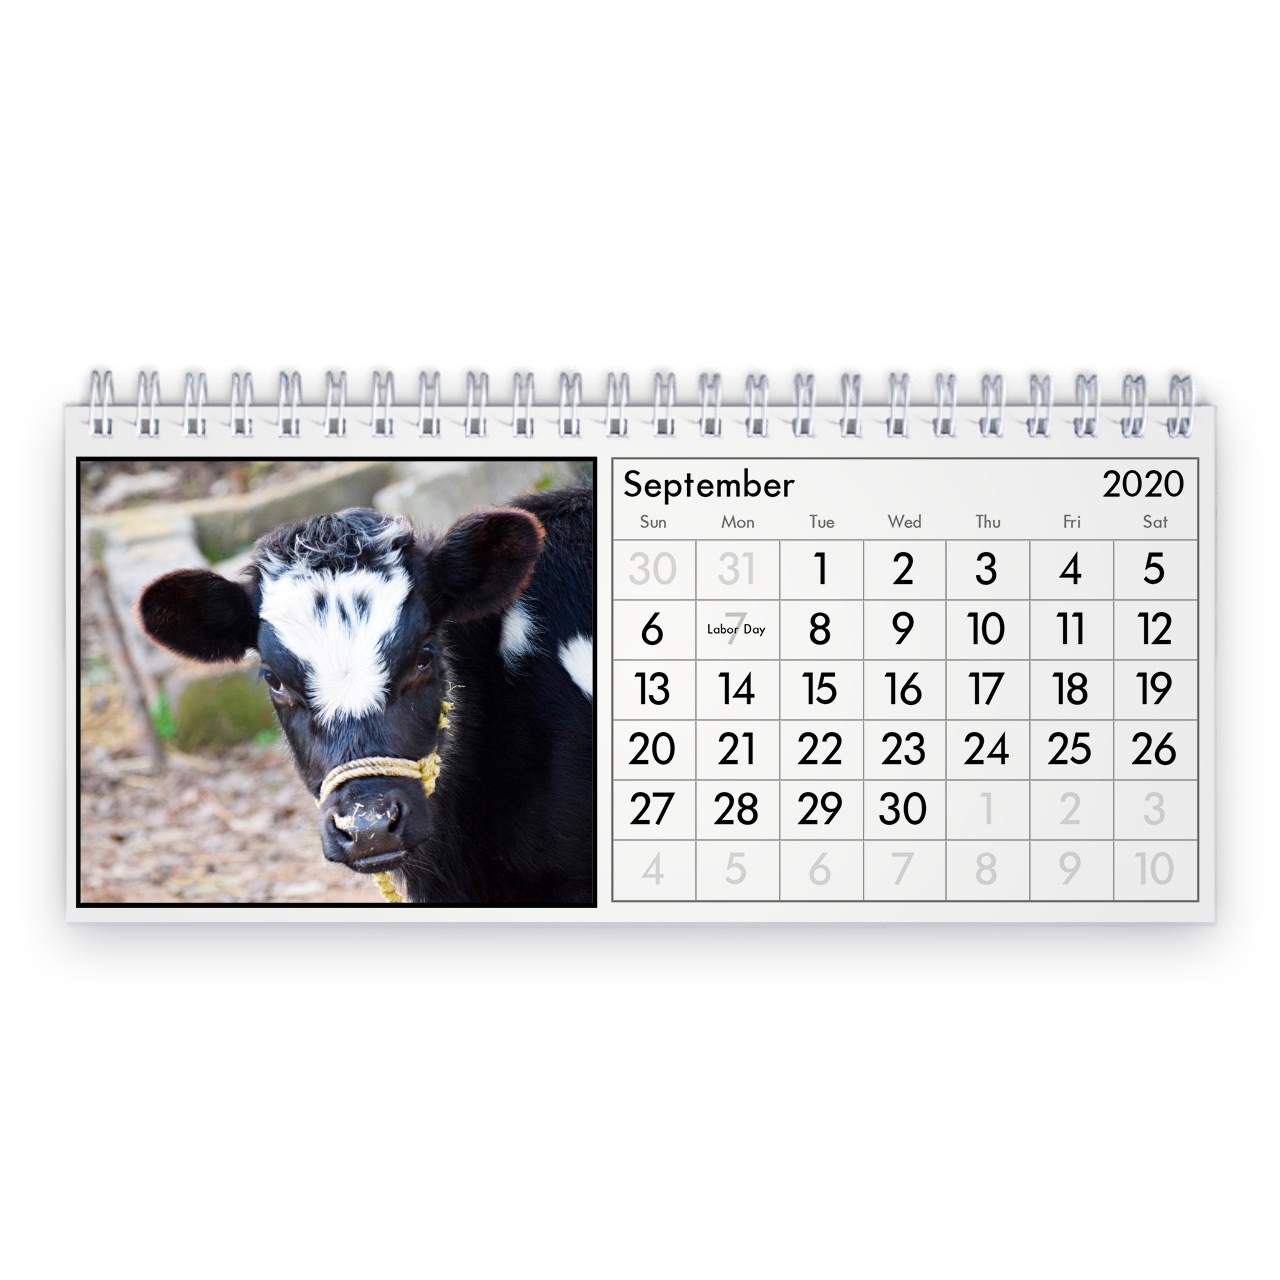 Cow 2021 Desk Calendar Show Me A Calendar For December 2021